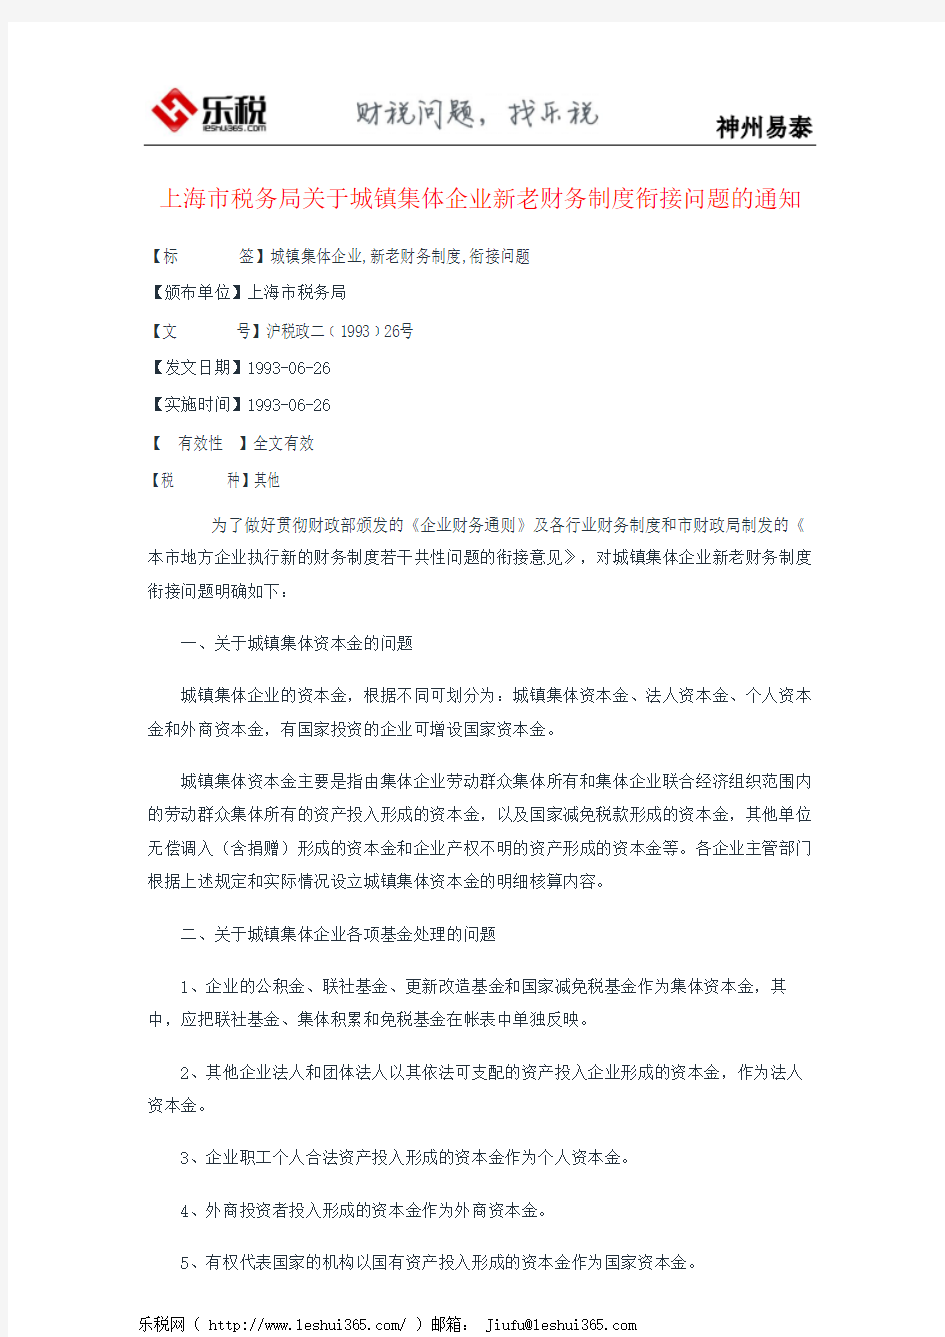 上海市税务局关于城镇集体企业新老财务制度衔接问题的通知